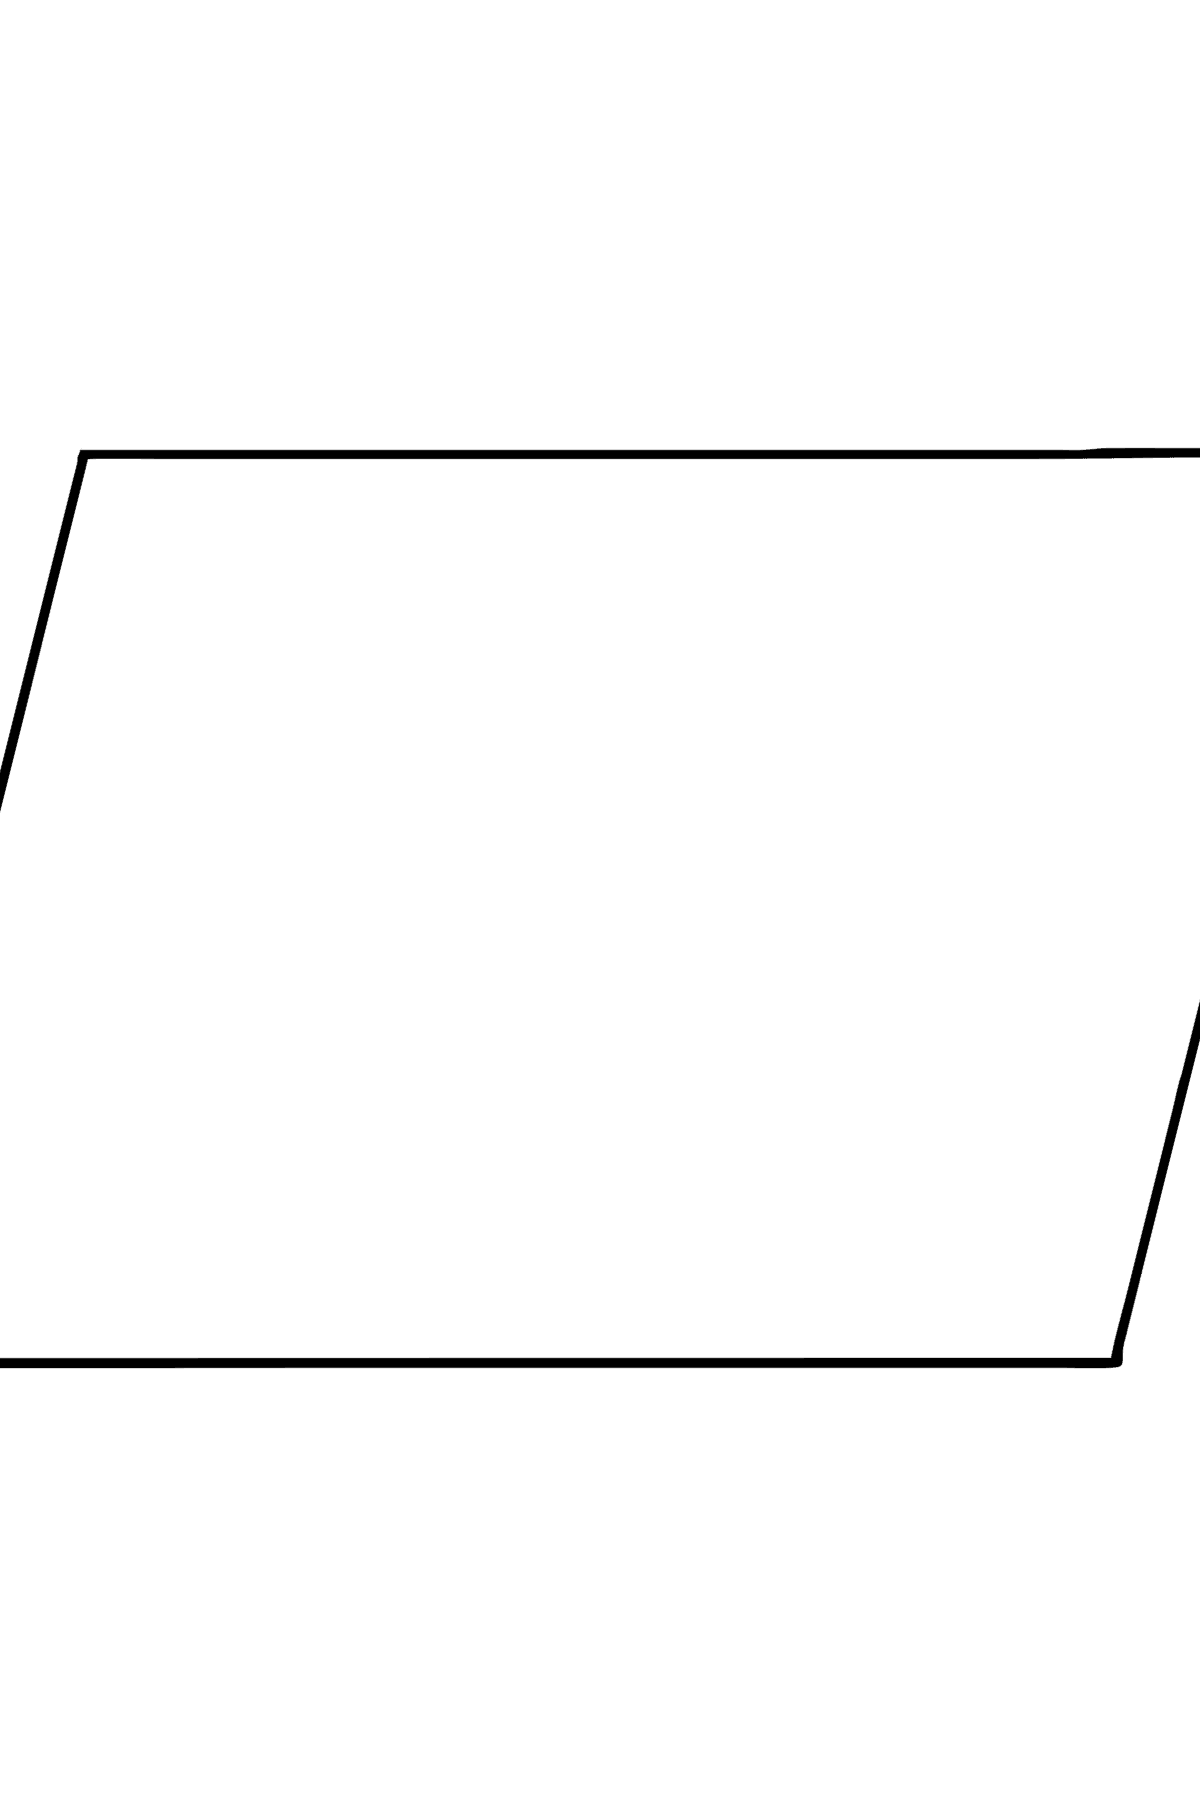 Ausmalbild Parallelogramm - Malvorlagen für Kinder